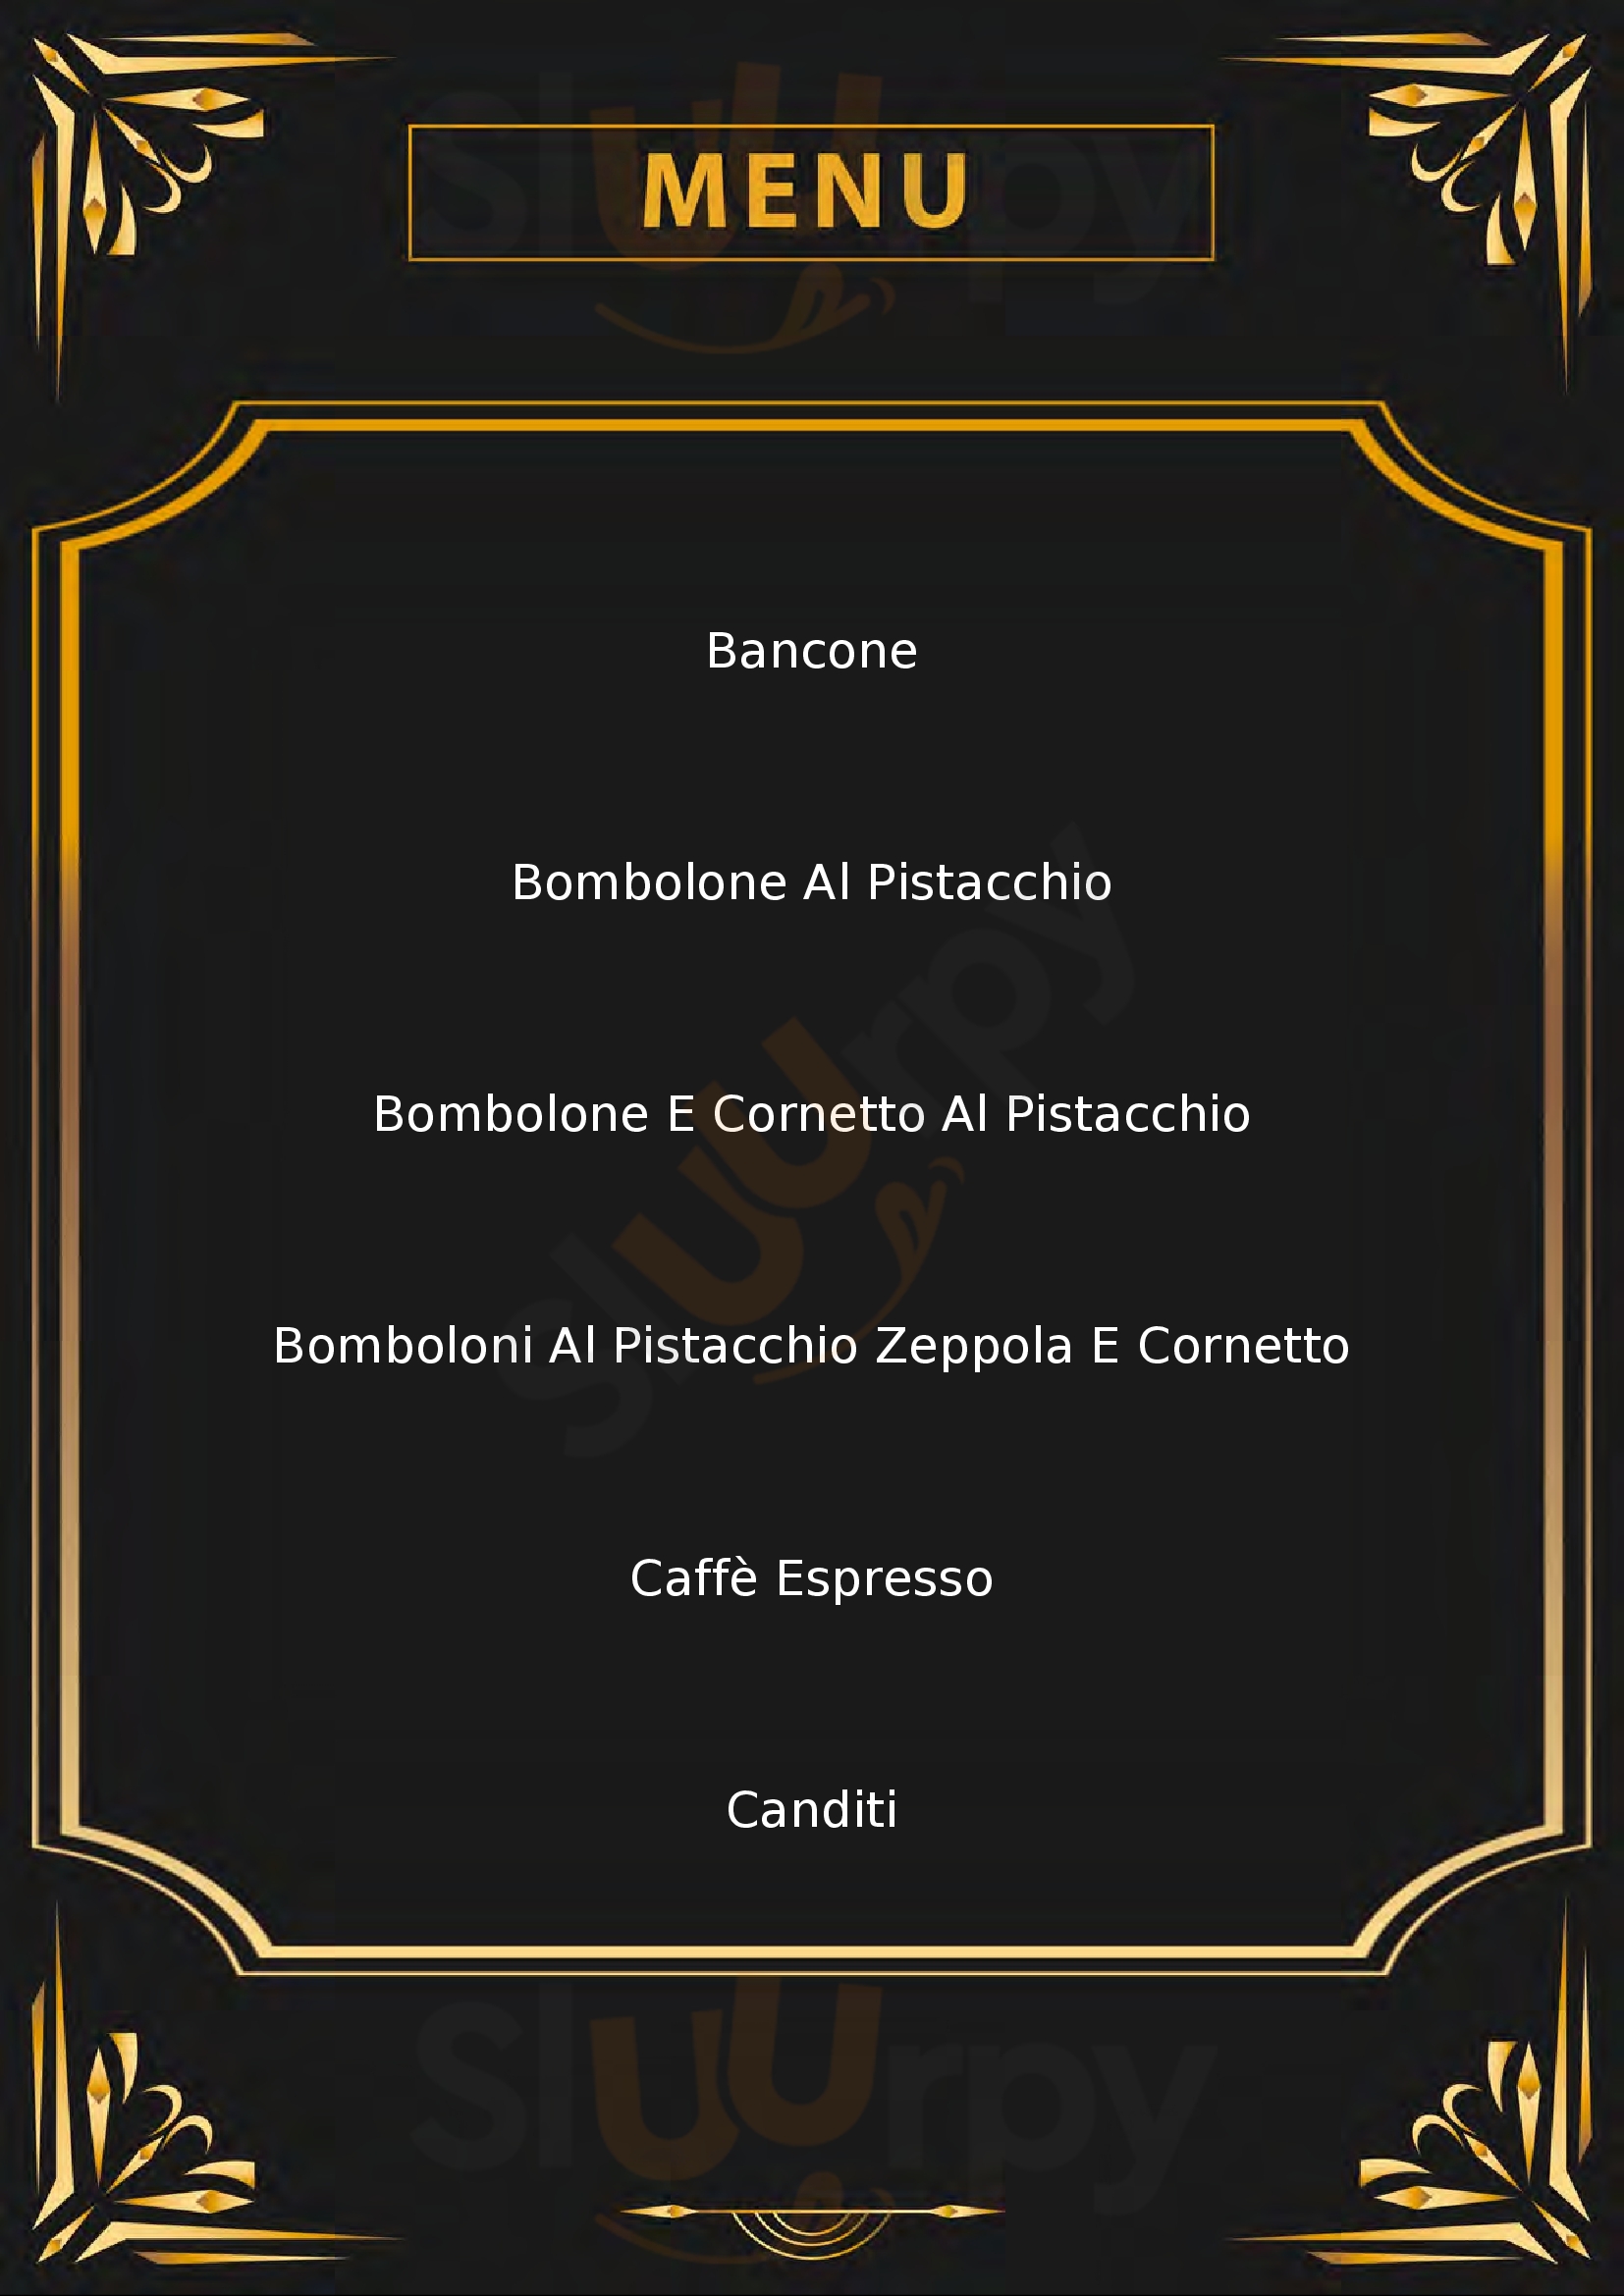 Dolce e Caffe Piacenza menù 1 pagina